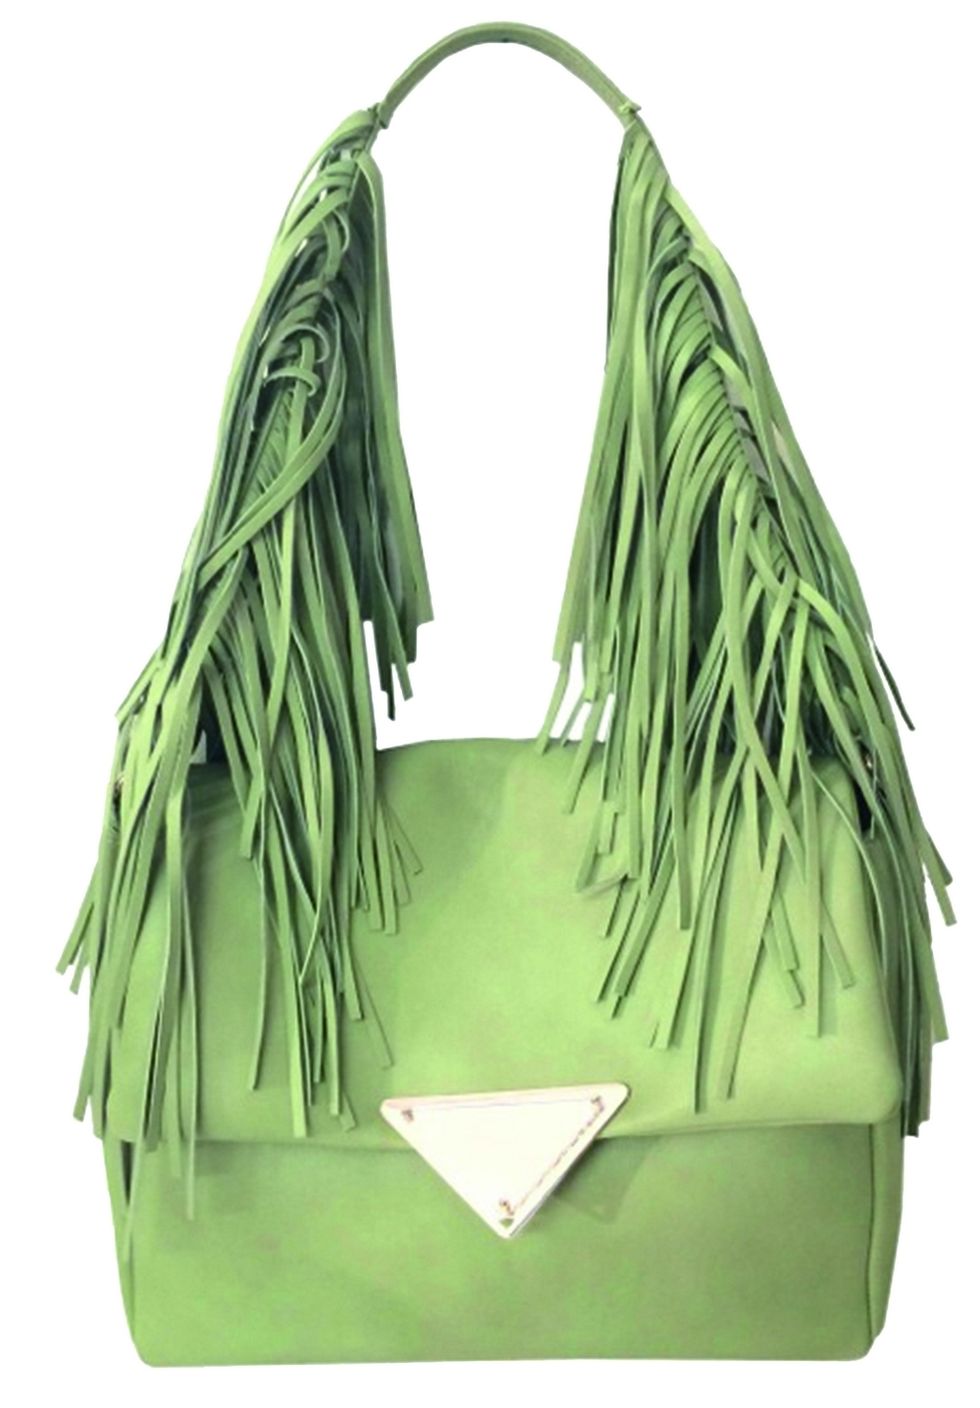 Green, Shoulder bag, Fashion design, Handbag, Tote bag, 